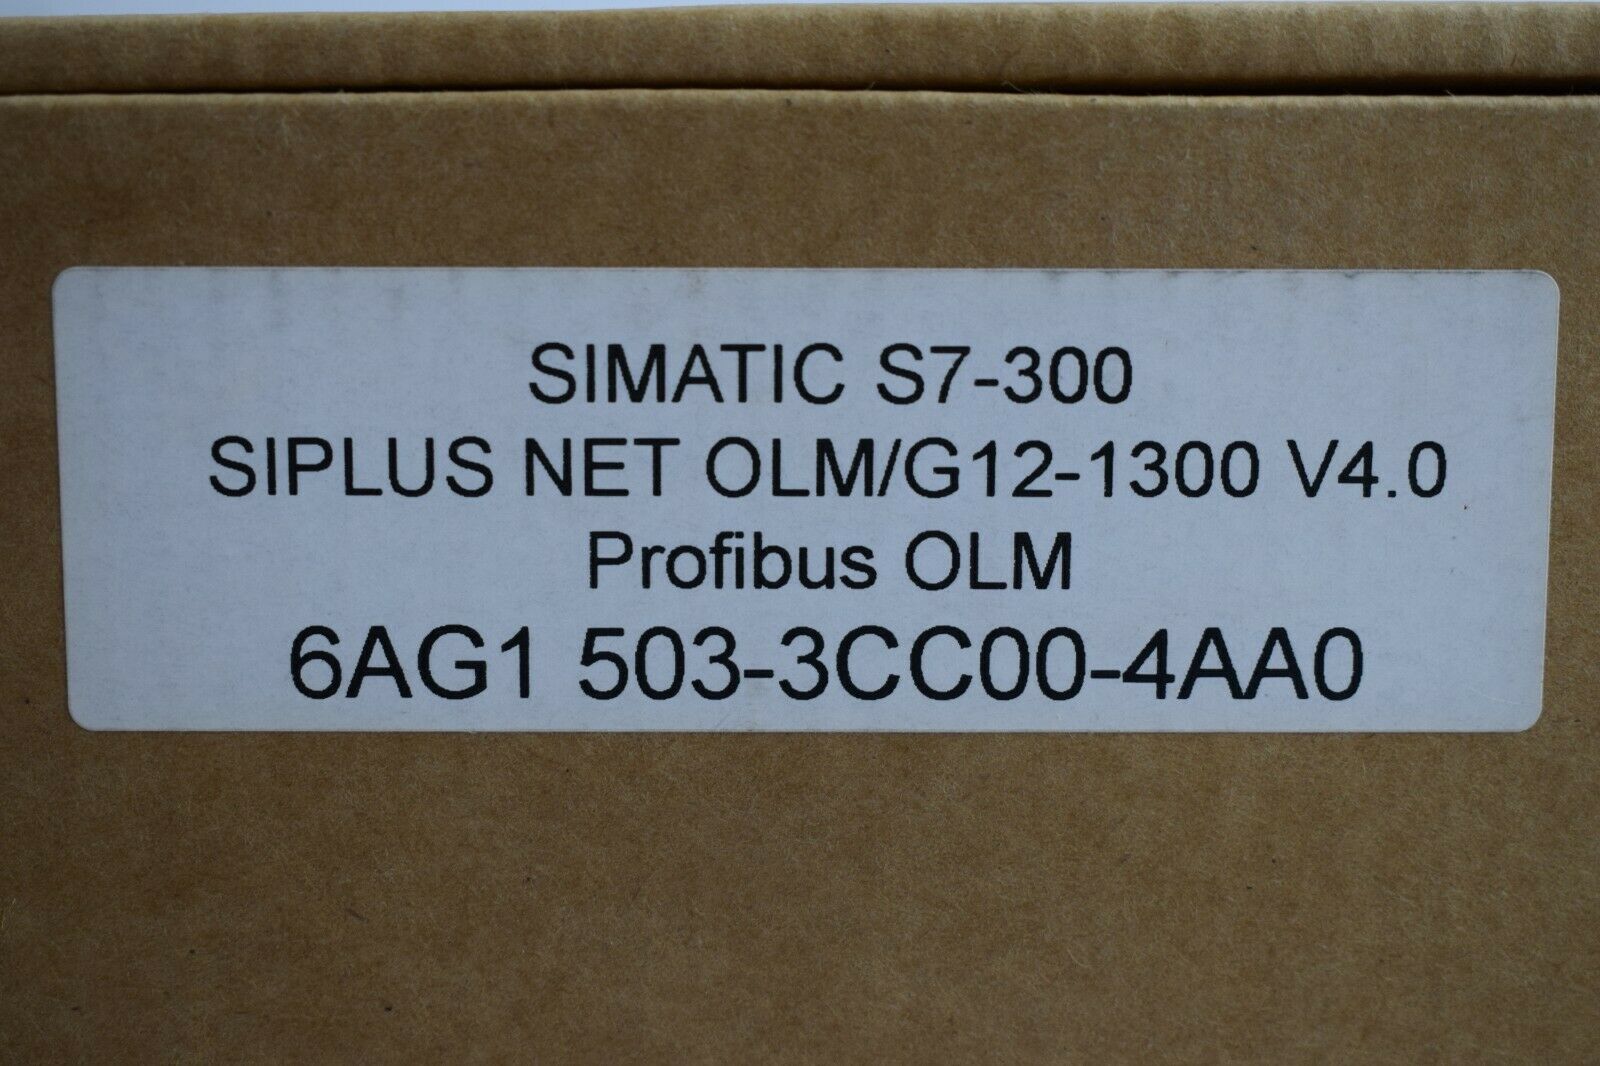 Siemens Siplus Net OLM/G12-1300 V4.0 6AG1 503-3CC00-4AA0 ( 6AG1503-3CC00-4AA0 )